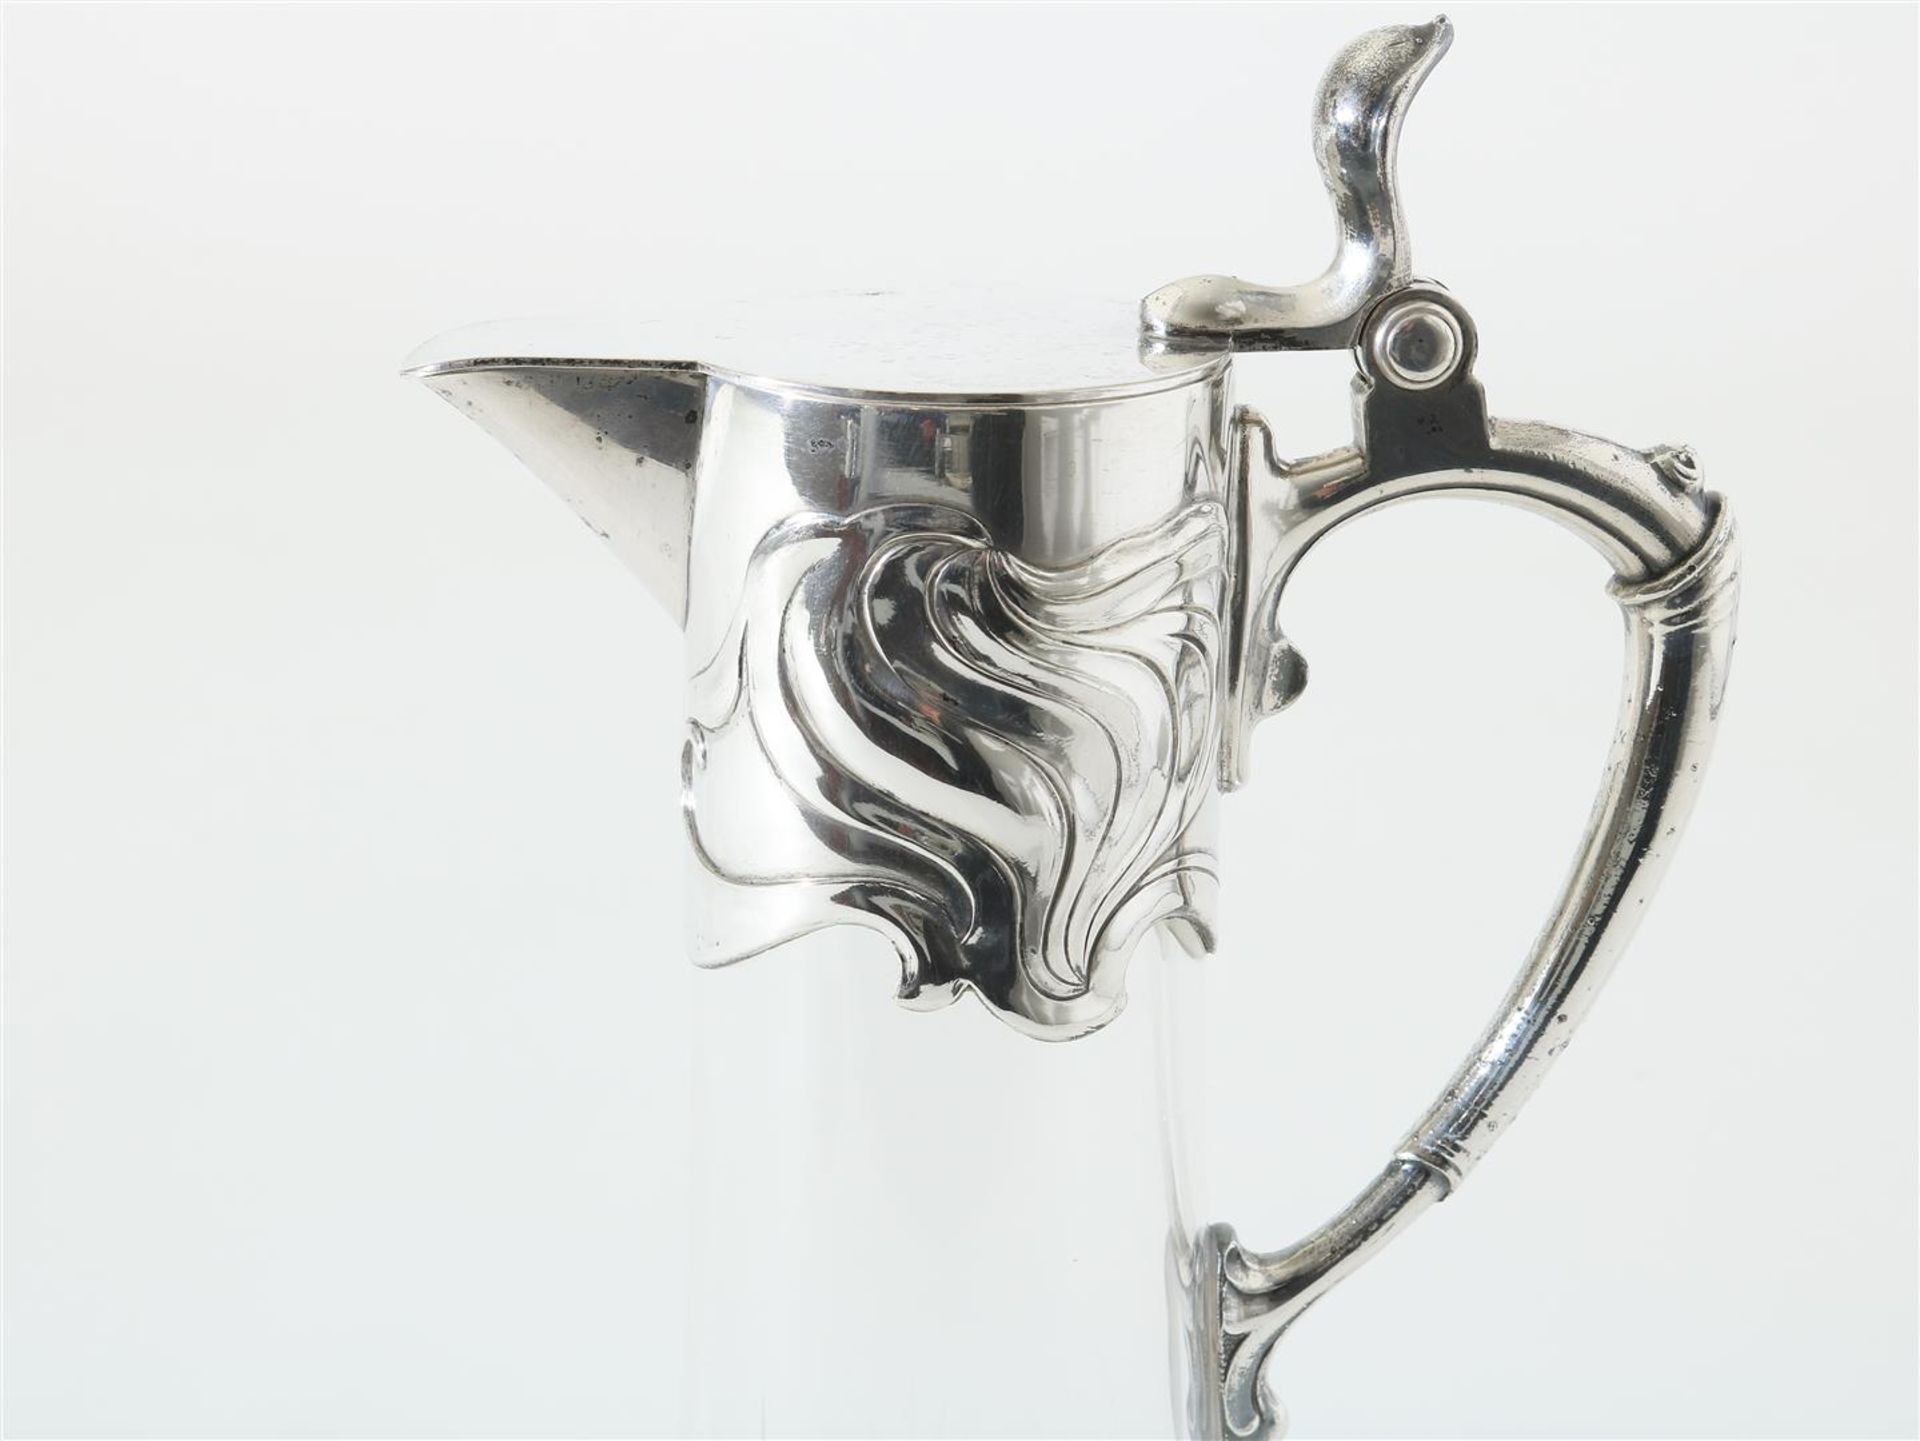 Crystal Jugendstil carafe with plated mount, WMF - Bild 2 aus 4